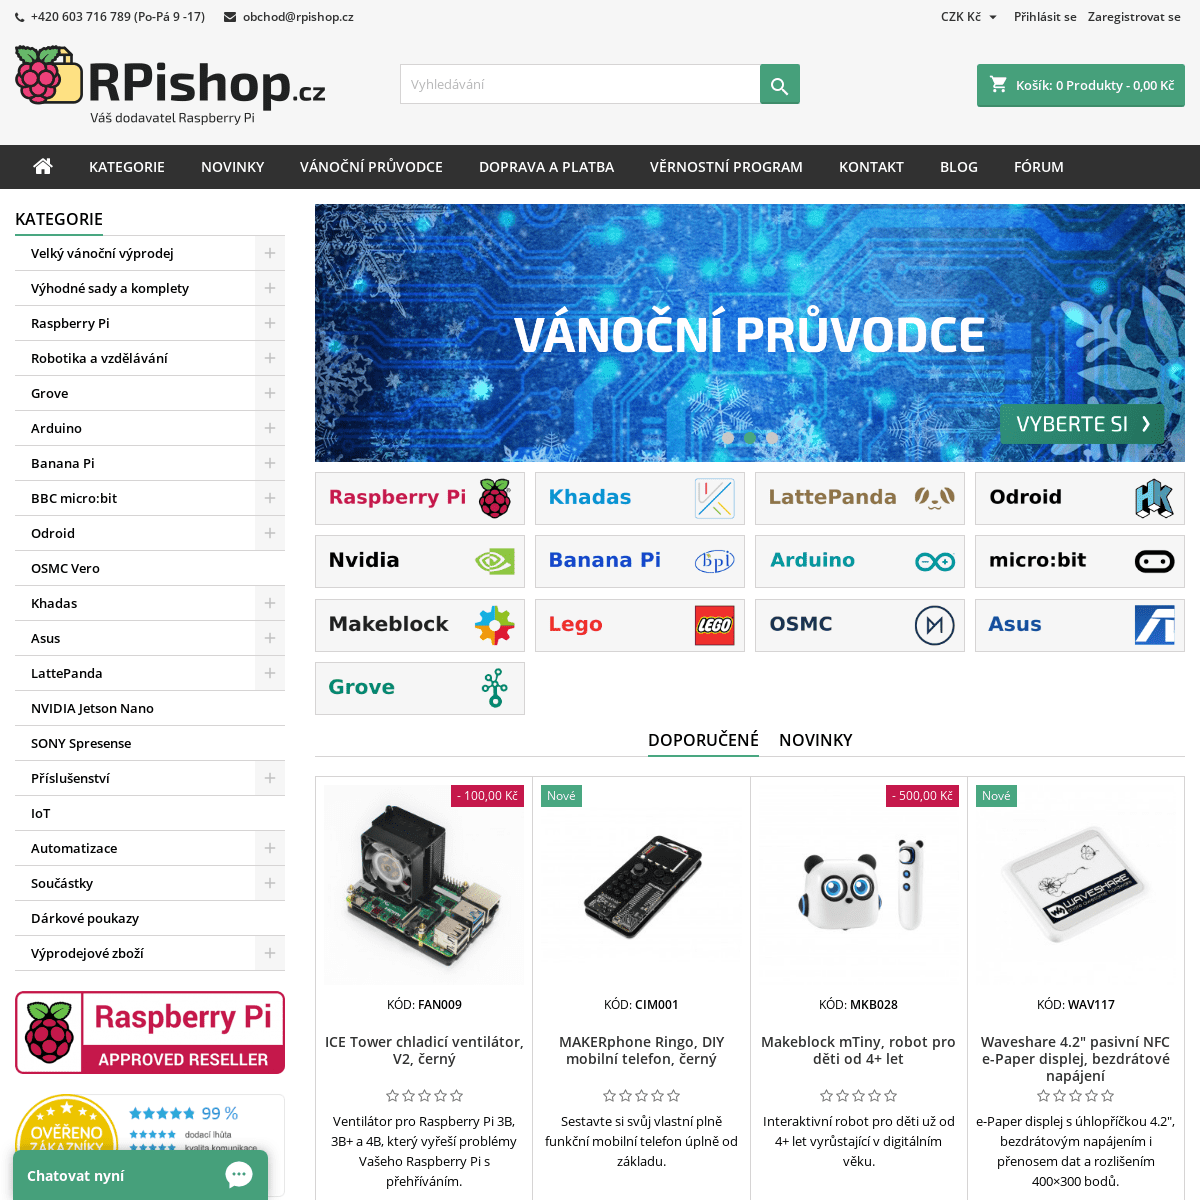 A complete backup of rpishop.cz